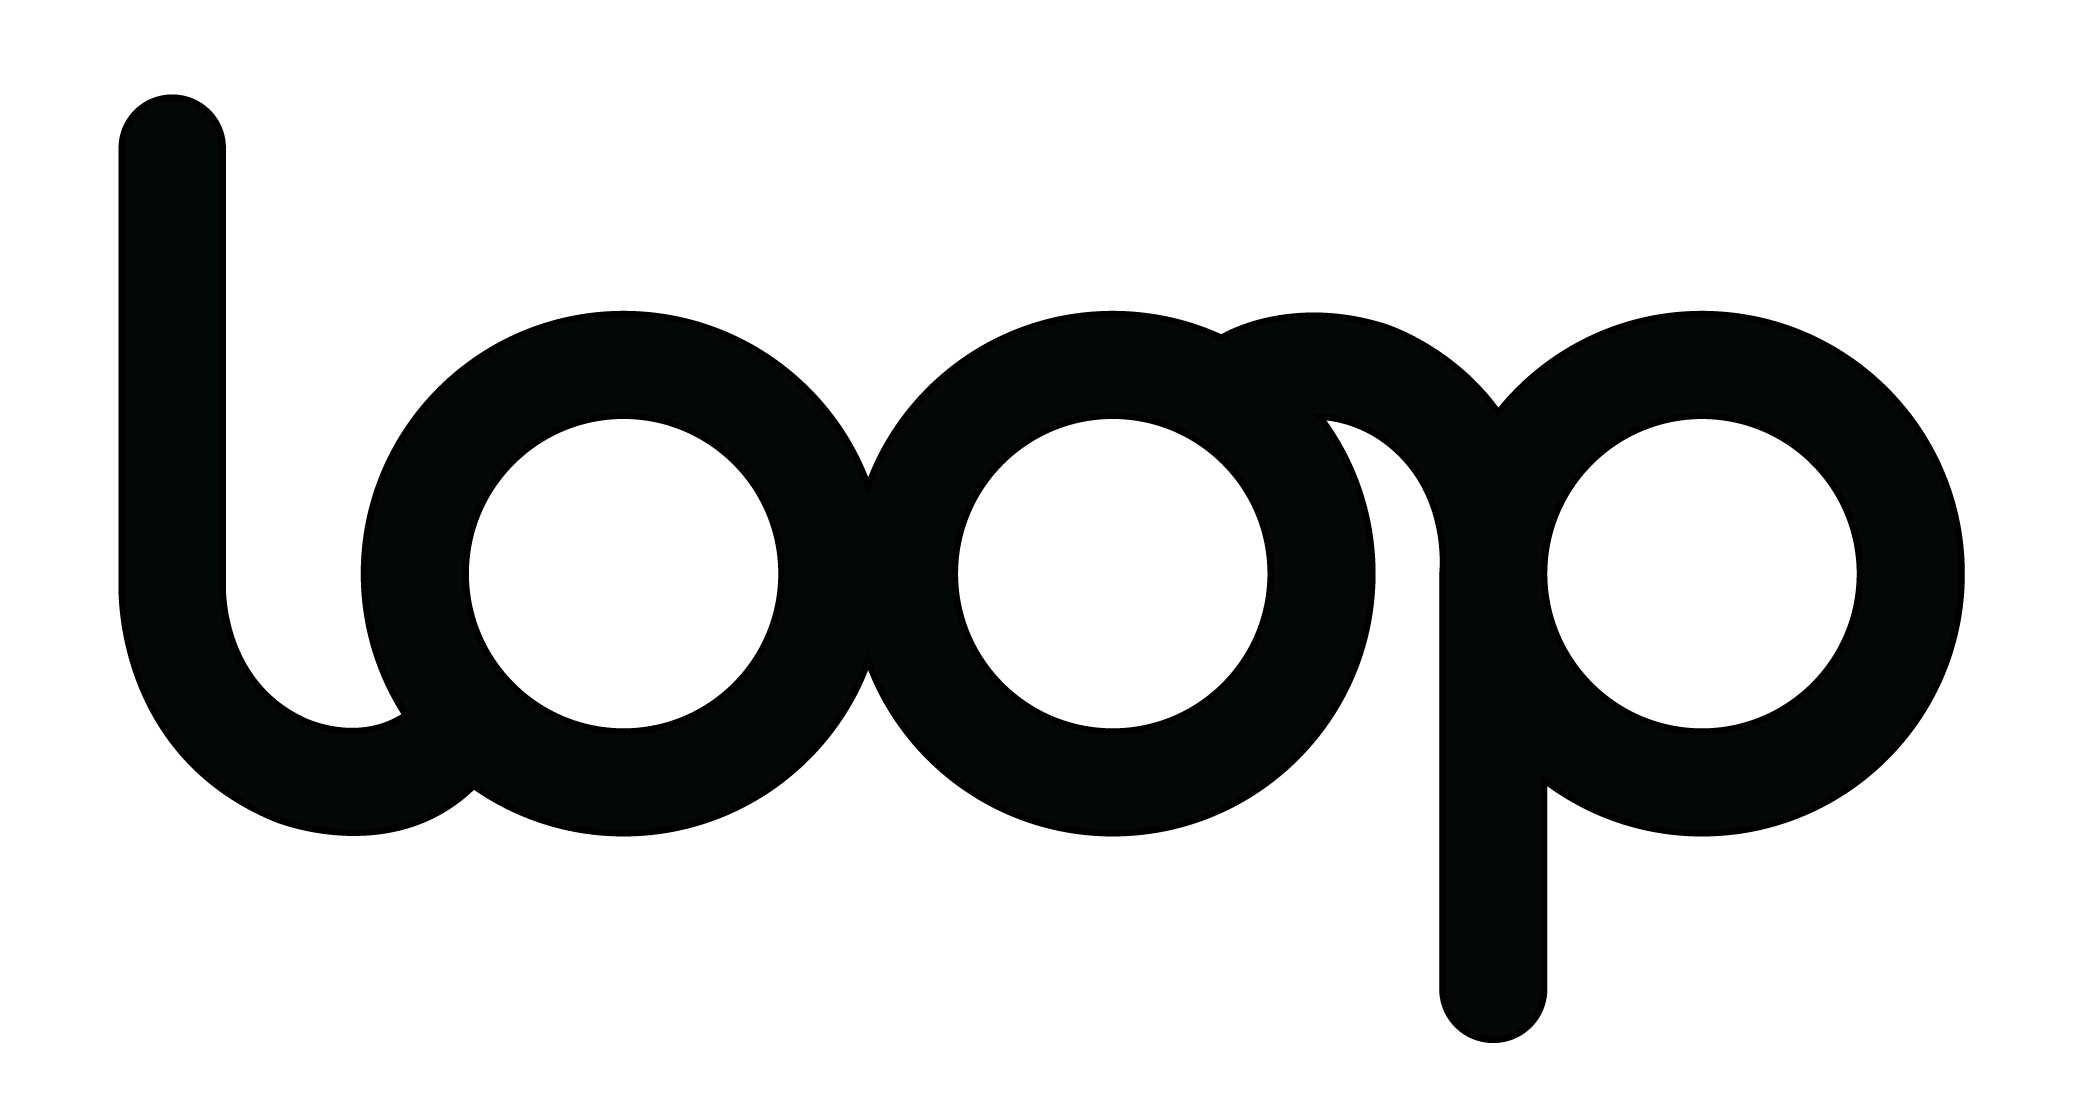 Loop logo in black